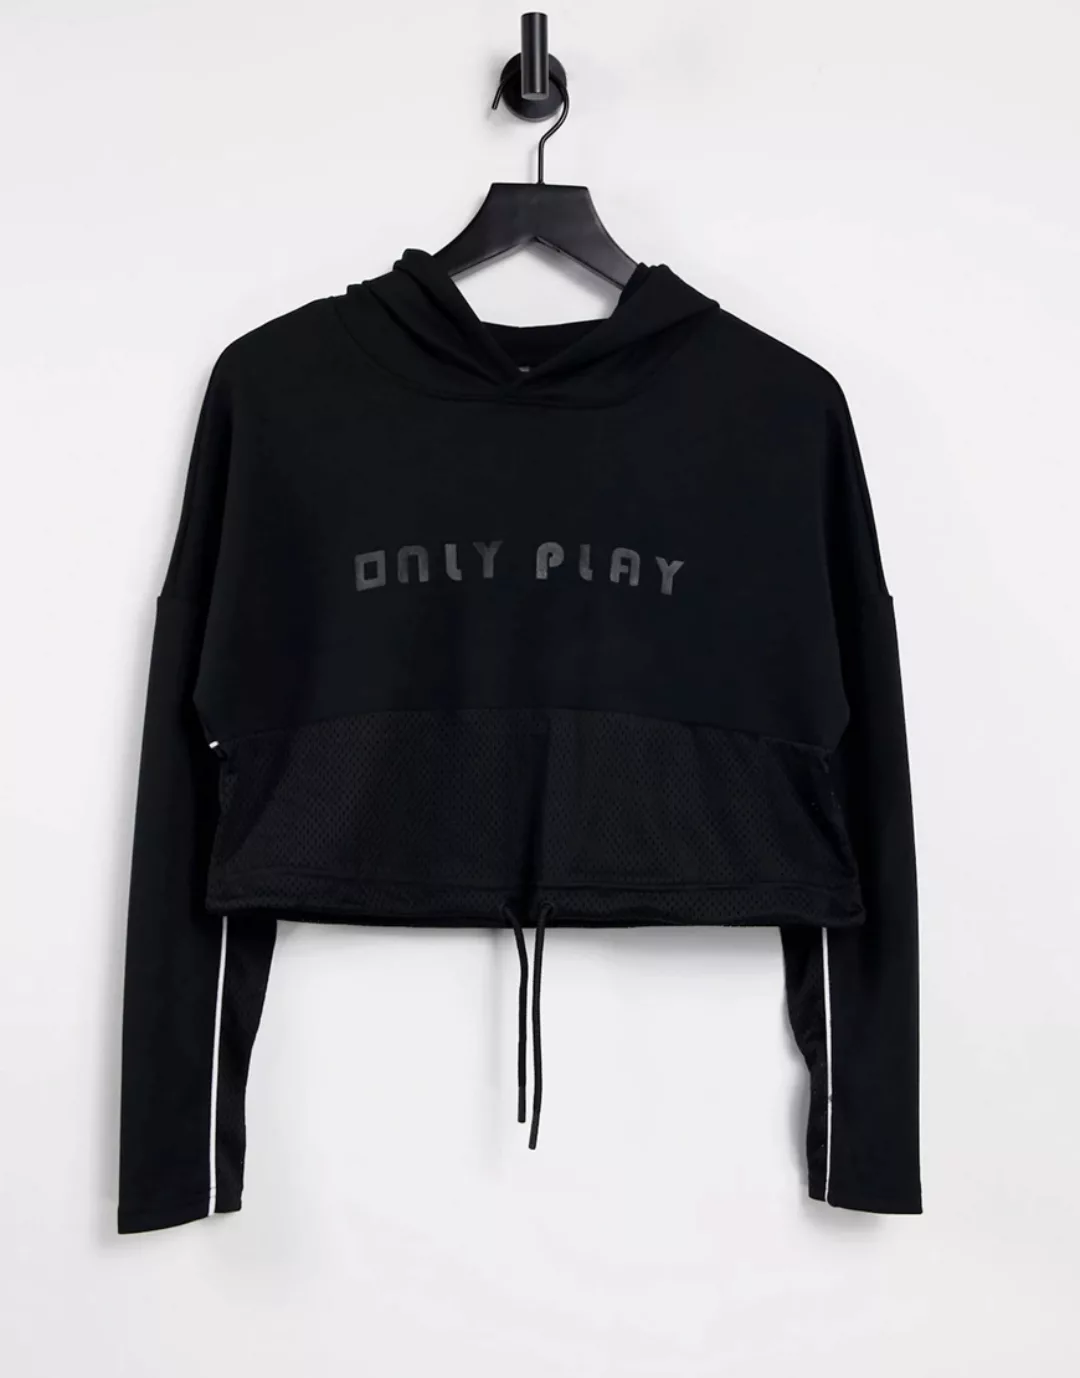 Only – Play – Kurzer, schwarzer Kapuzenpullover mit Netzstoff und Kordel im günstig online kaufen